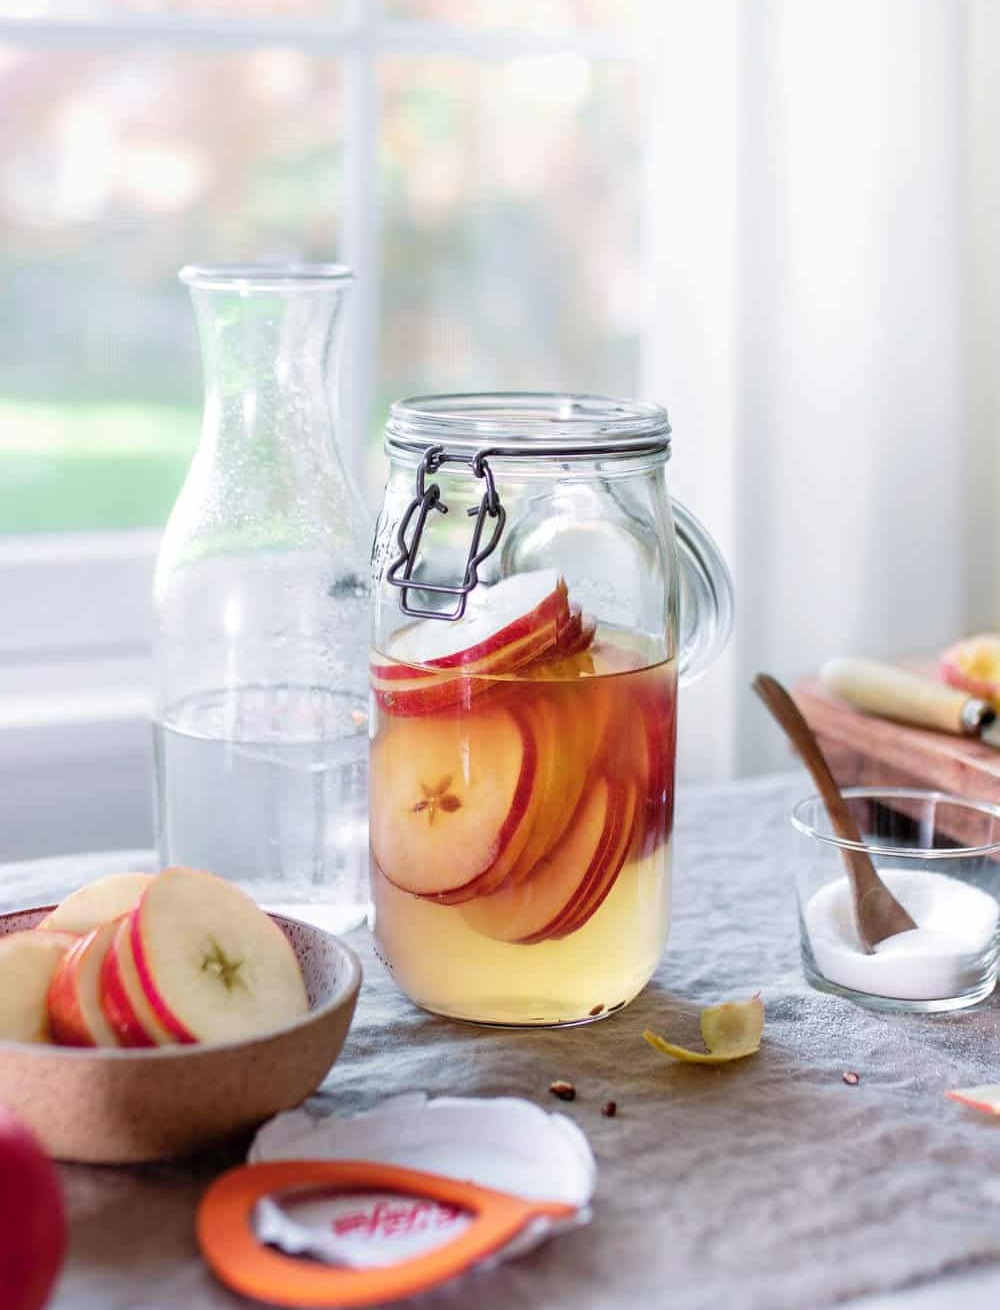 سیب حلقه شده در شیشه سرکه سیب - تهیه سرکه سیب خانگی